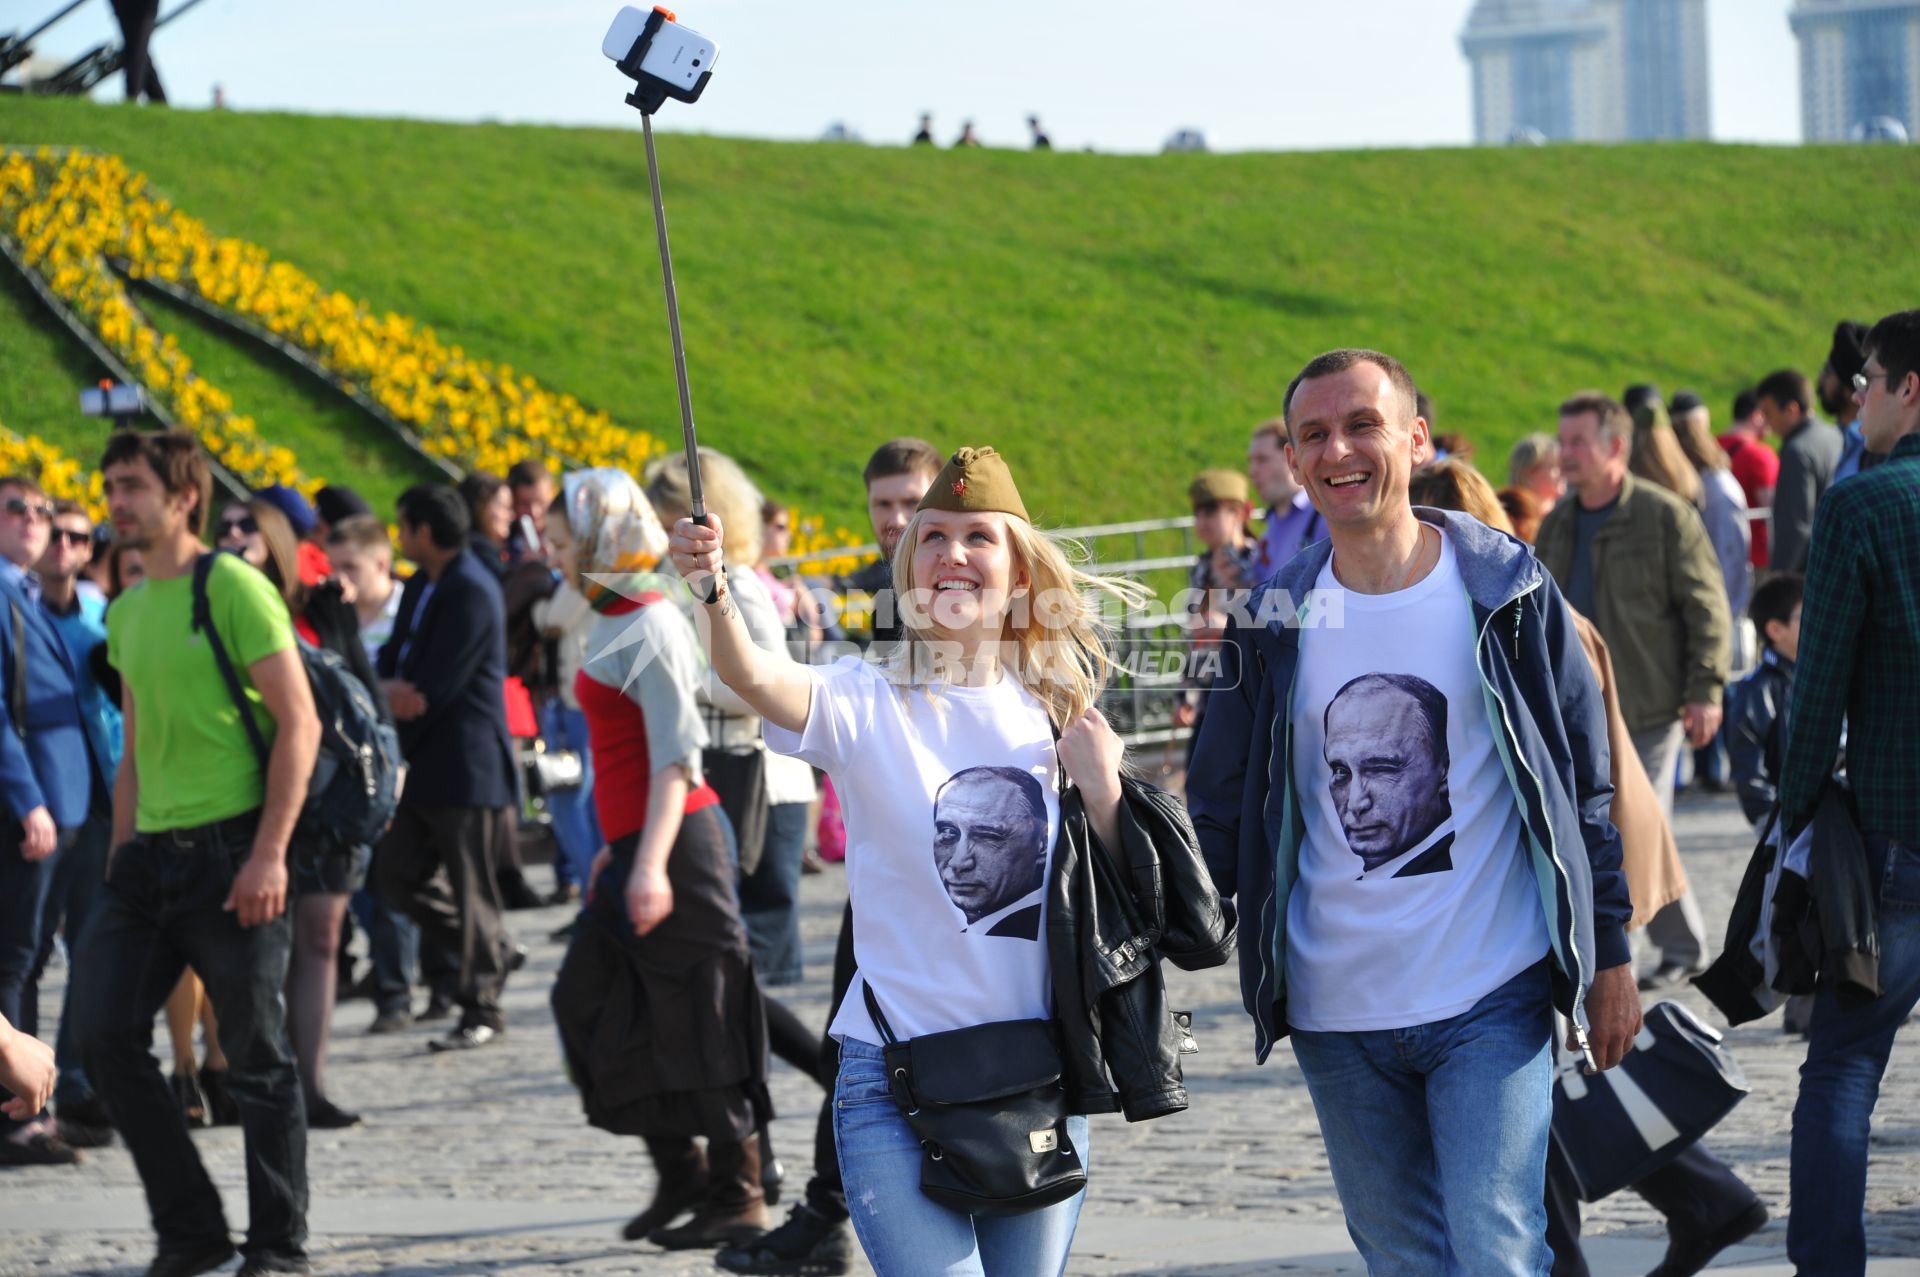 Празднования Дня Победы в Москве. Народные гуляния в Парке Победы на Поклонной горе.